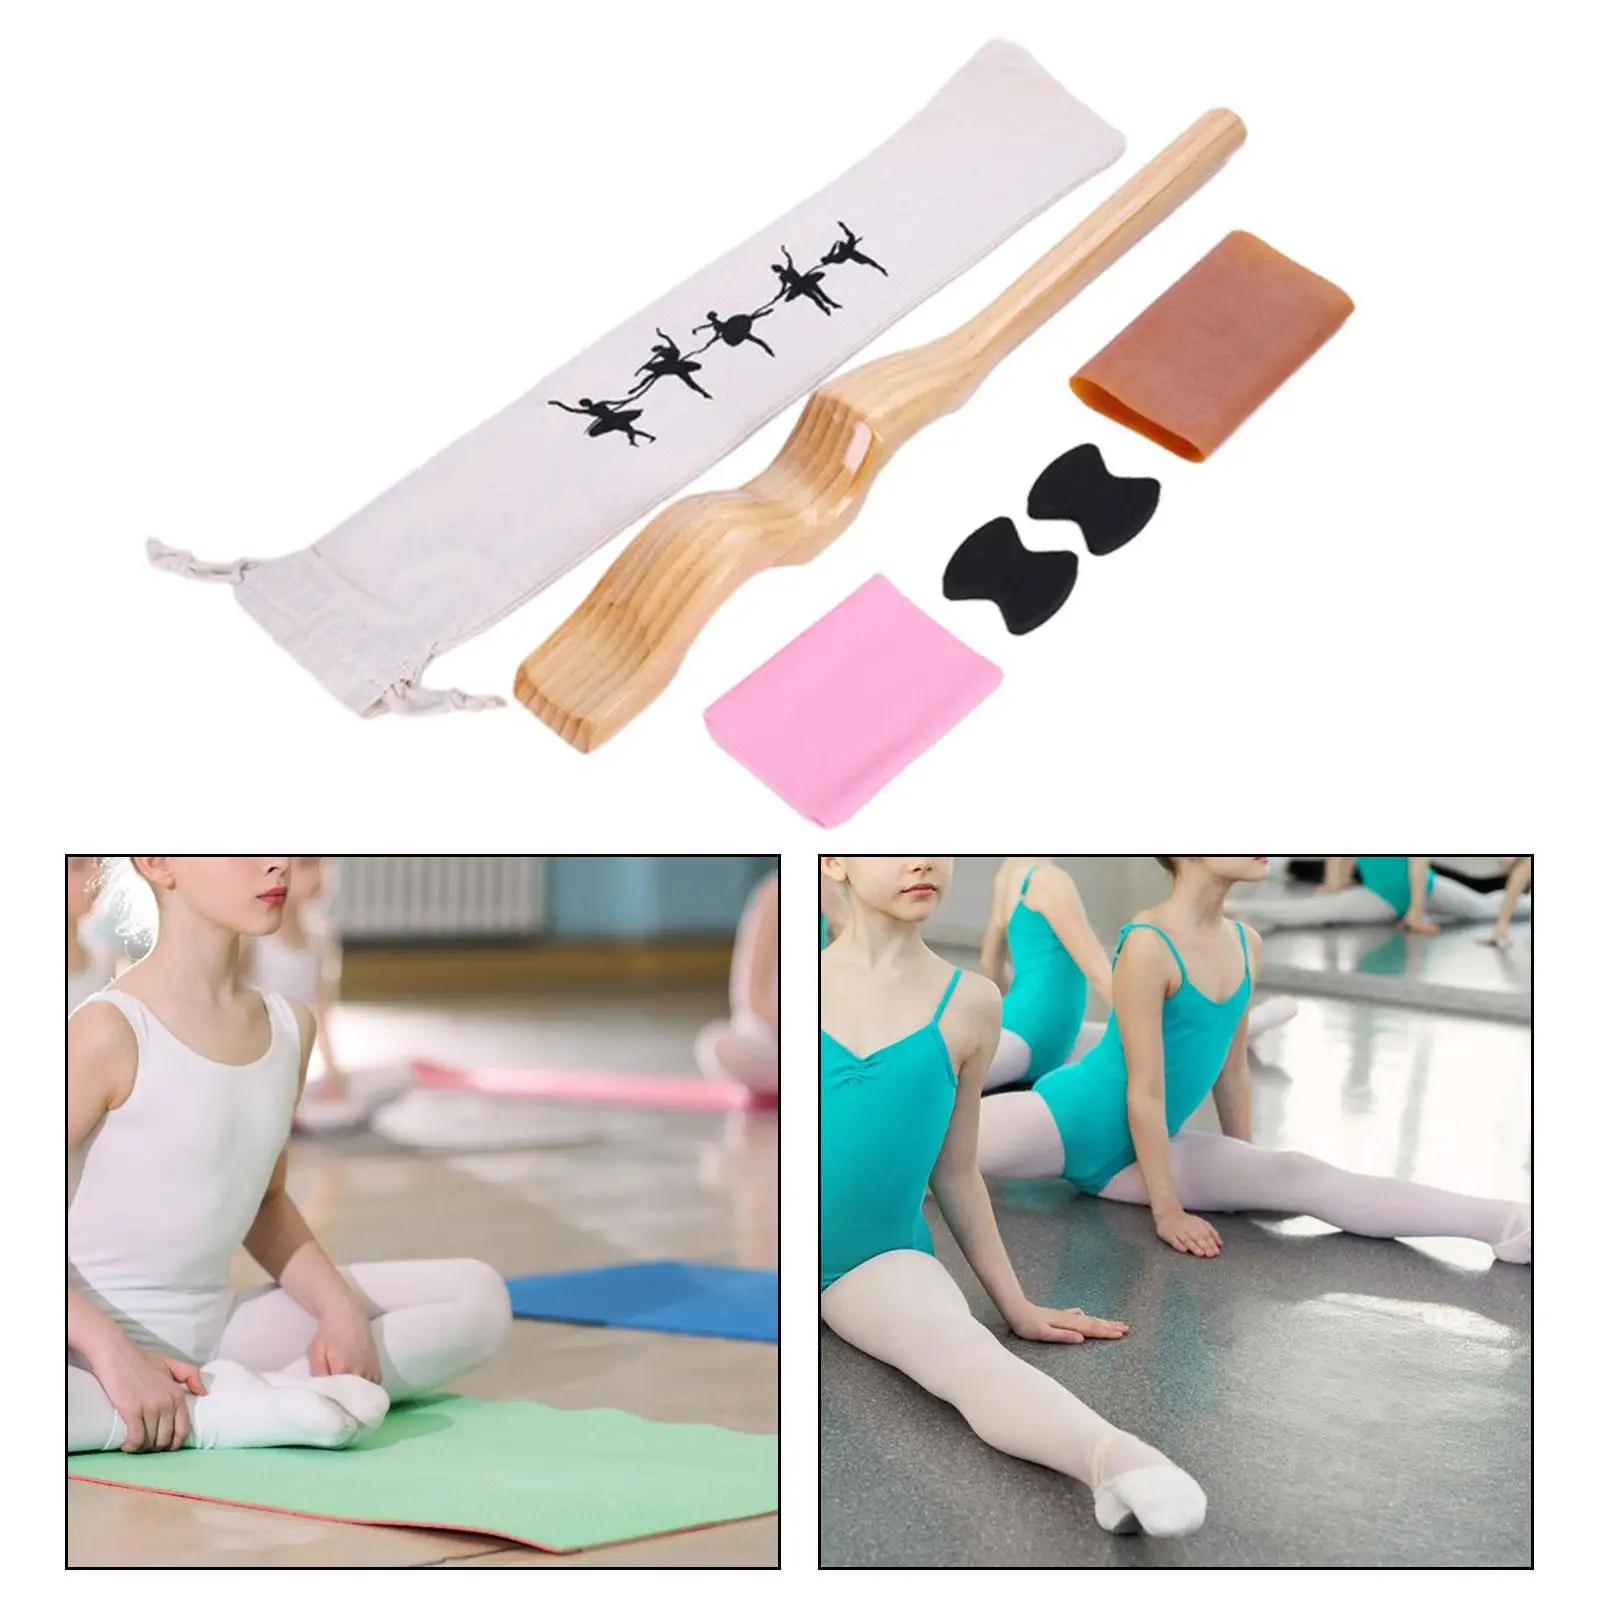 Ballet Dance Foot Stretcher Wood Ballet Accessory Foot Arch Stretcher Dance Stretching Equipment for Yoga People Ballet Dancer